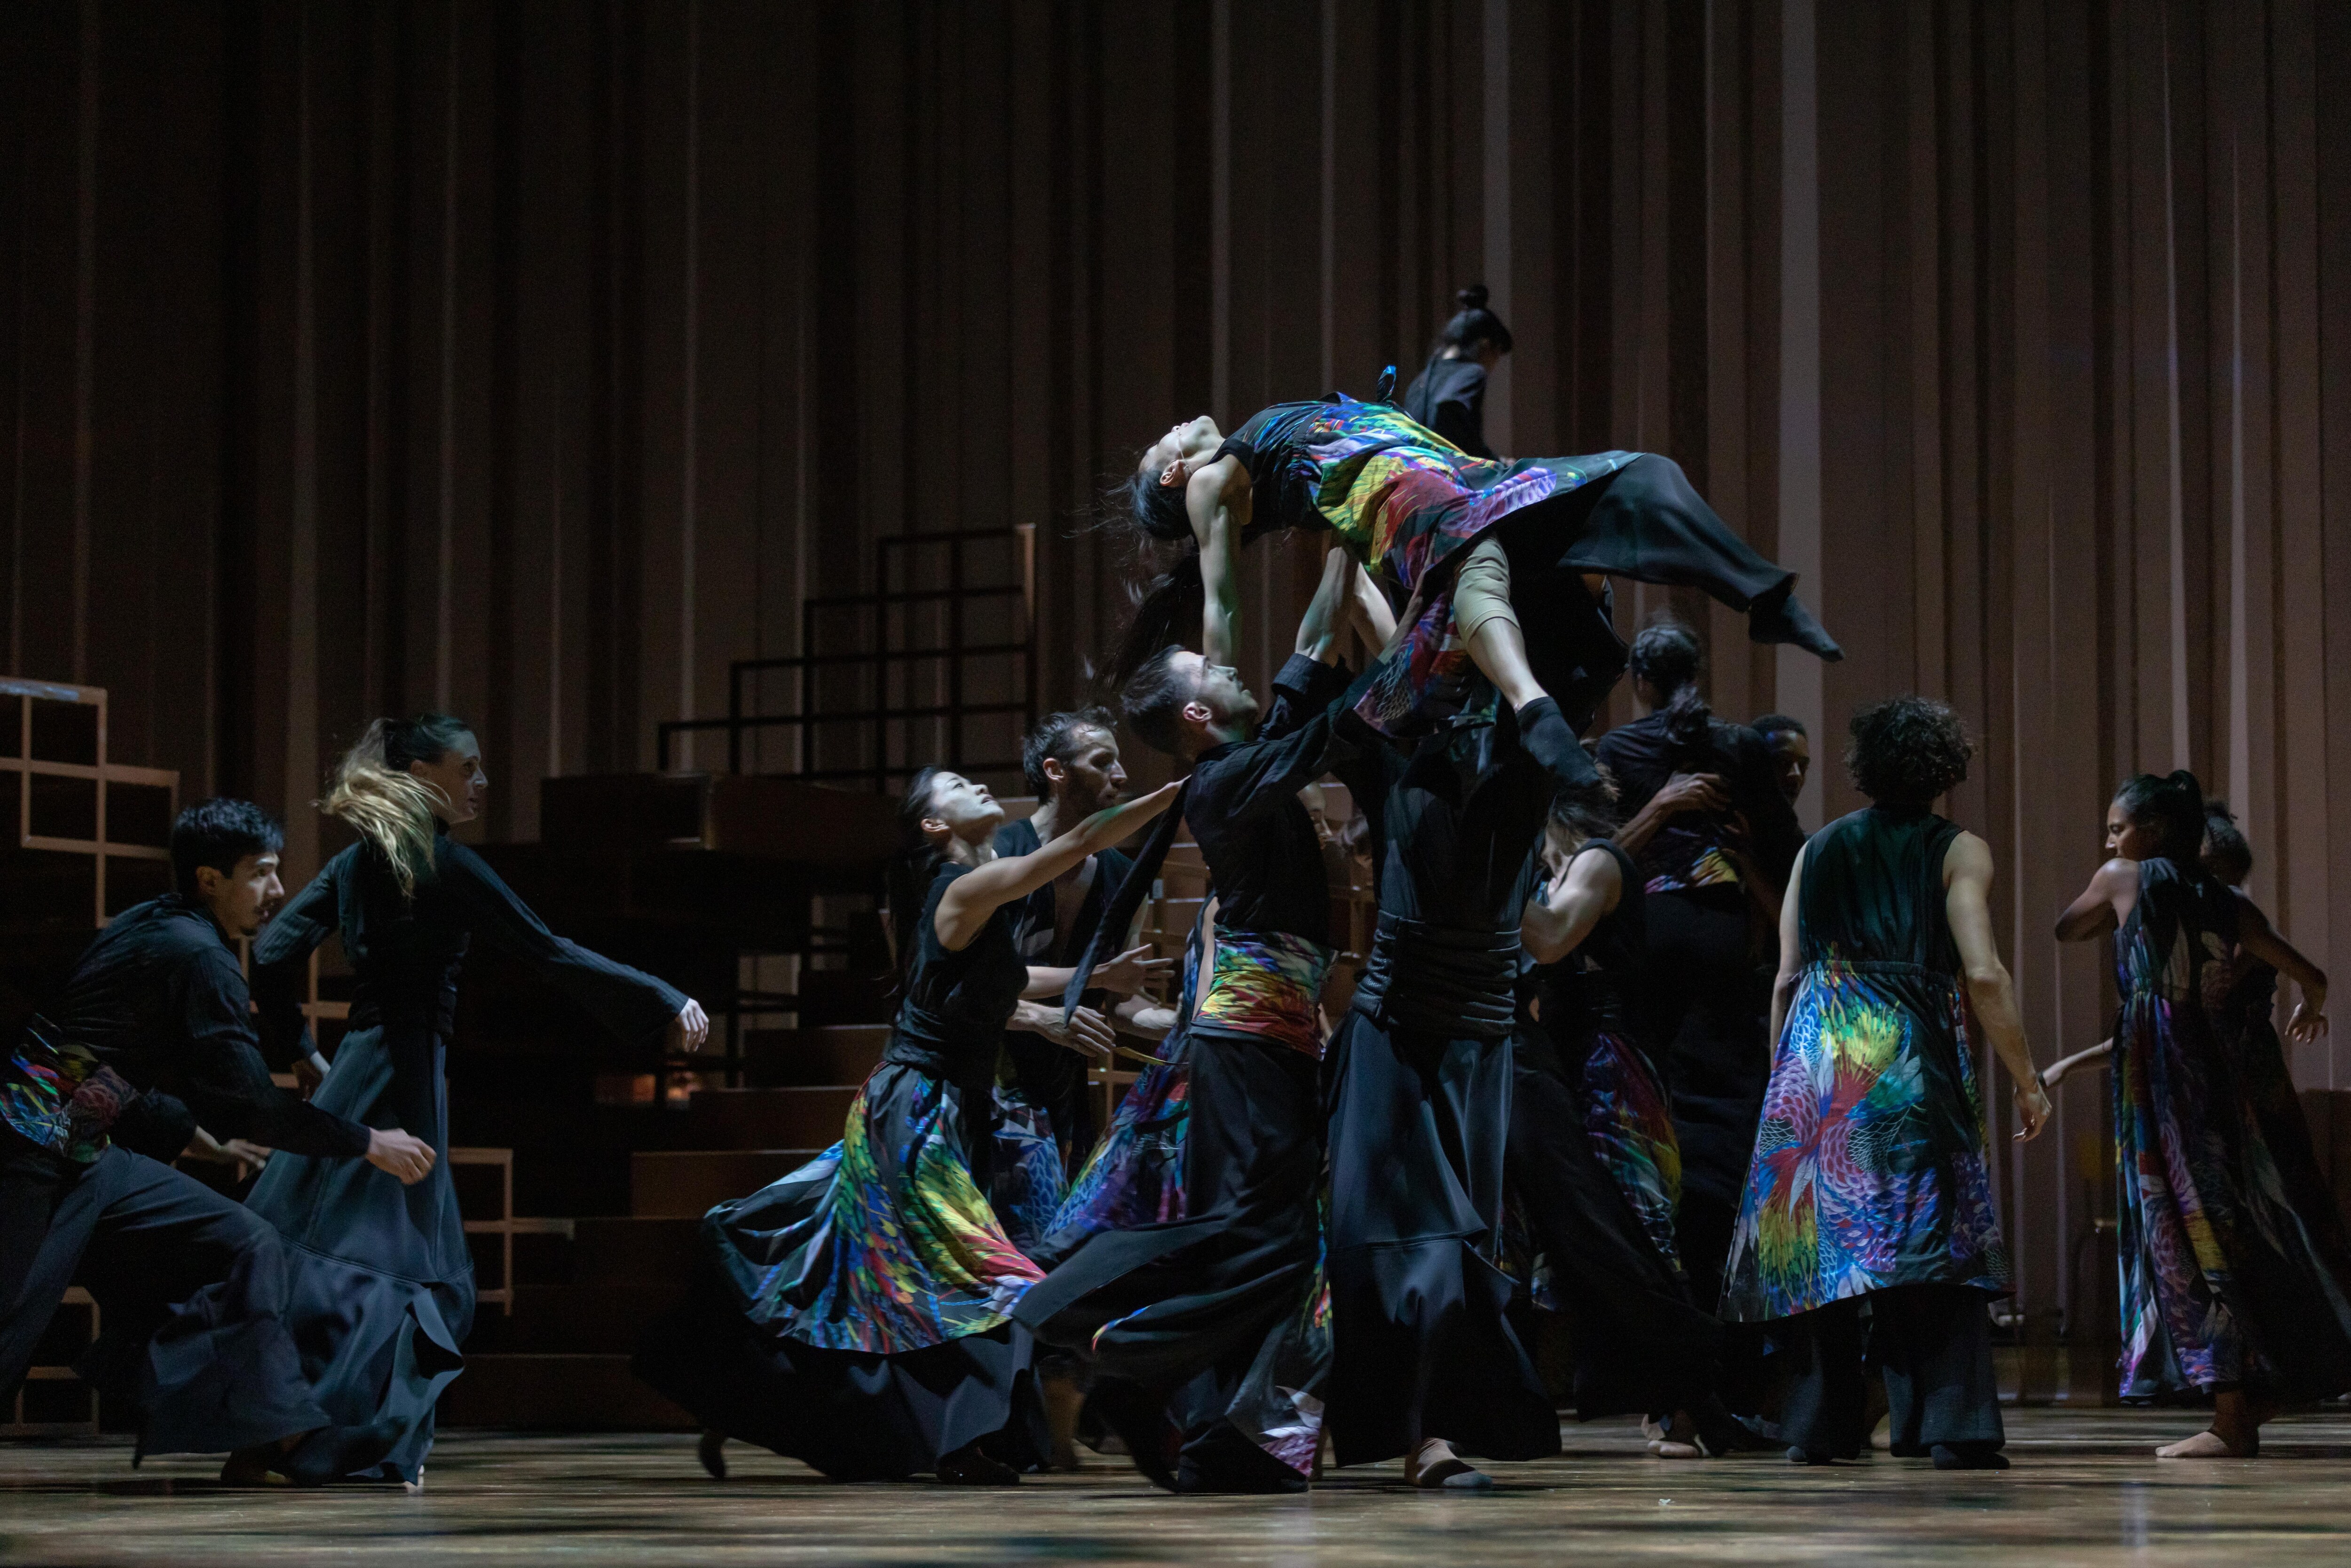  《Ukiyo-e》身穿彩色服裝的舞者向後靠倚，雙手舉在空。身穿黑衣的舞者在背景以對照方式呈現舞蹈。 